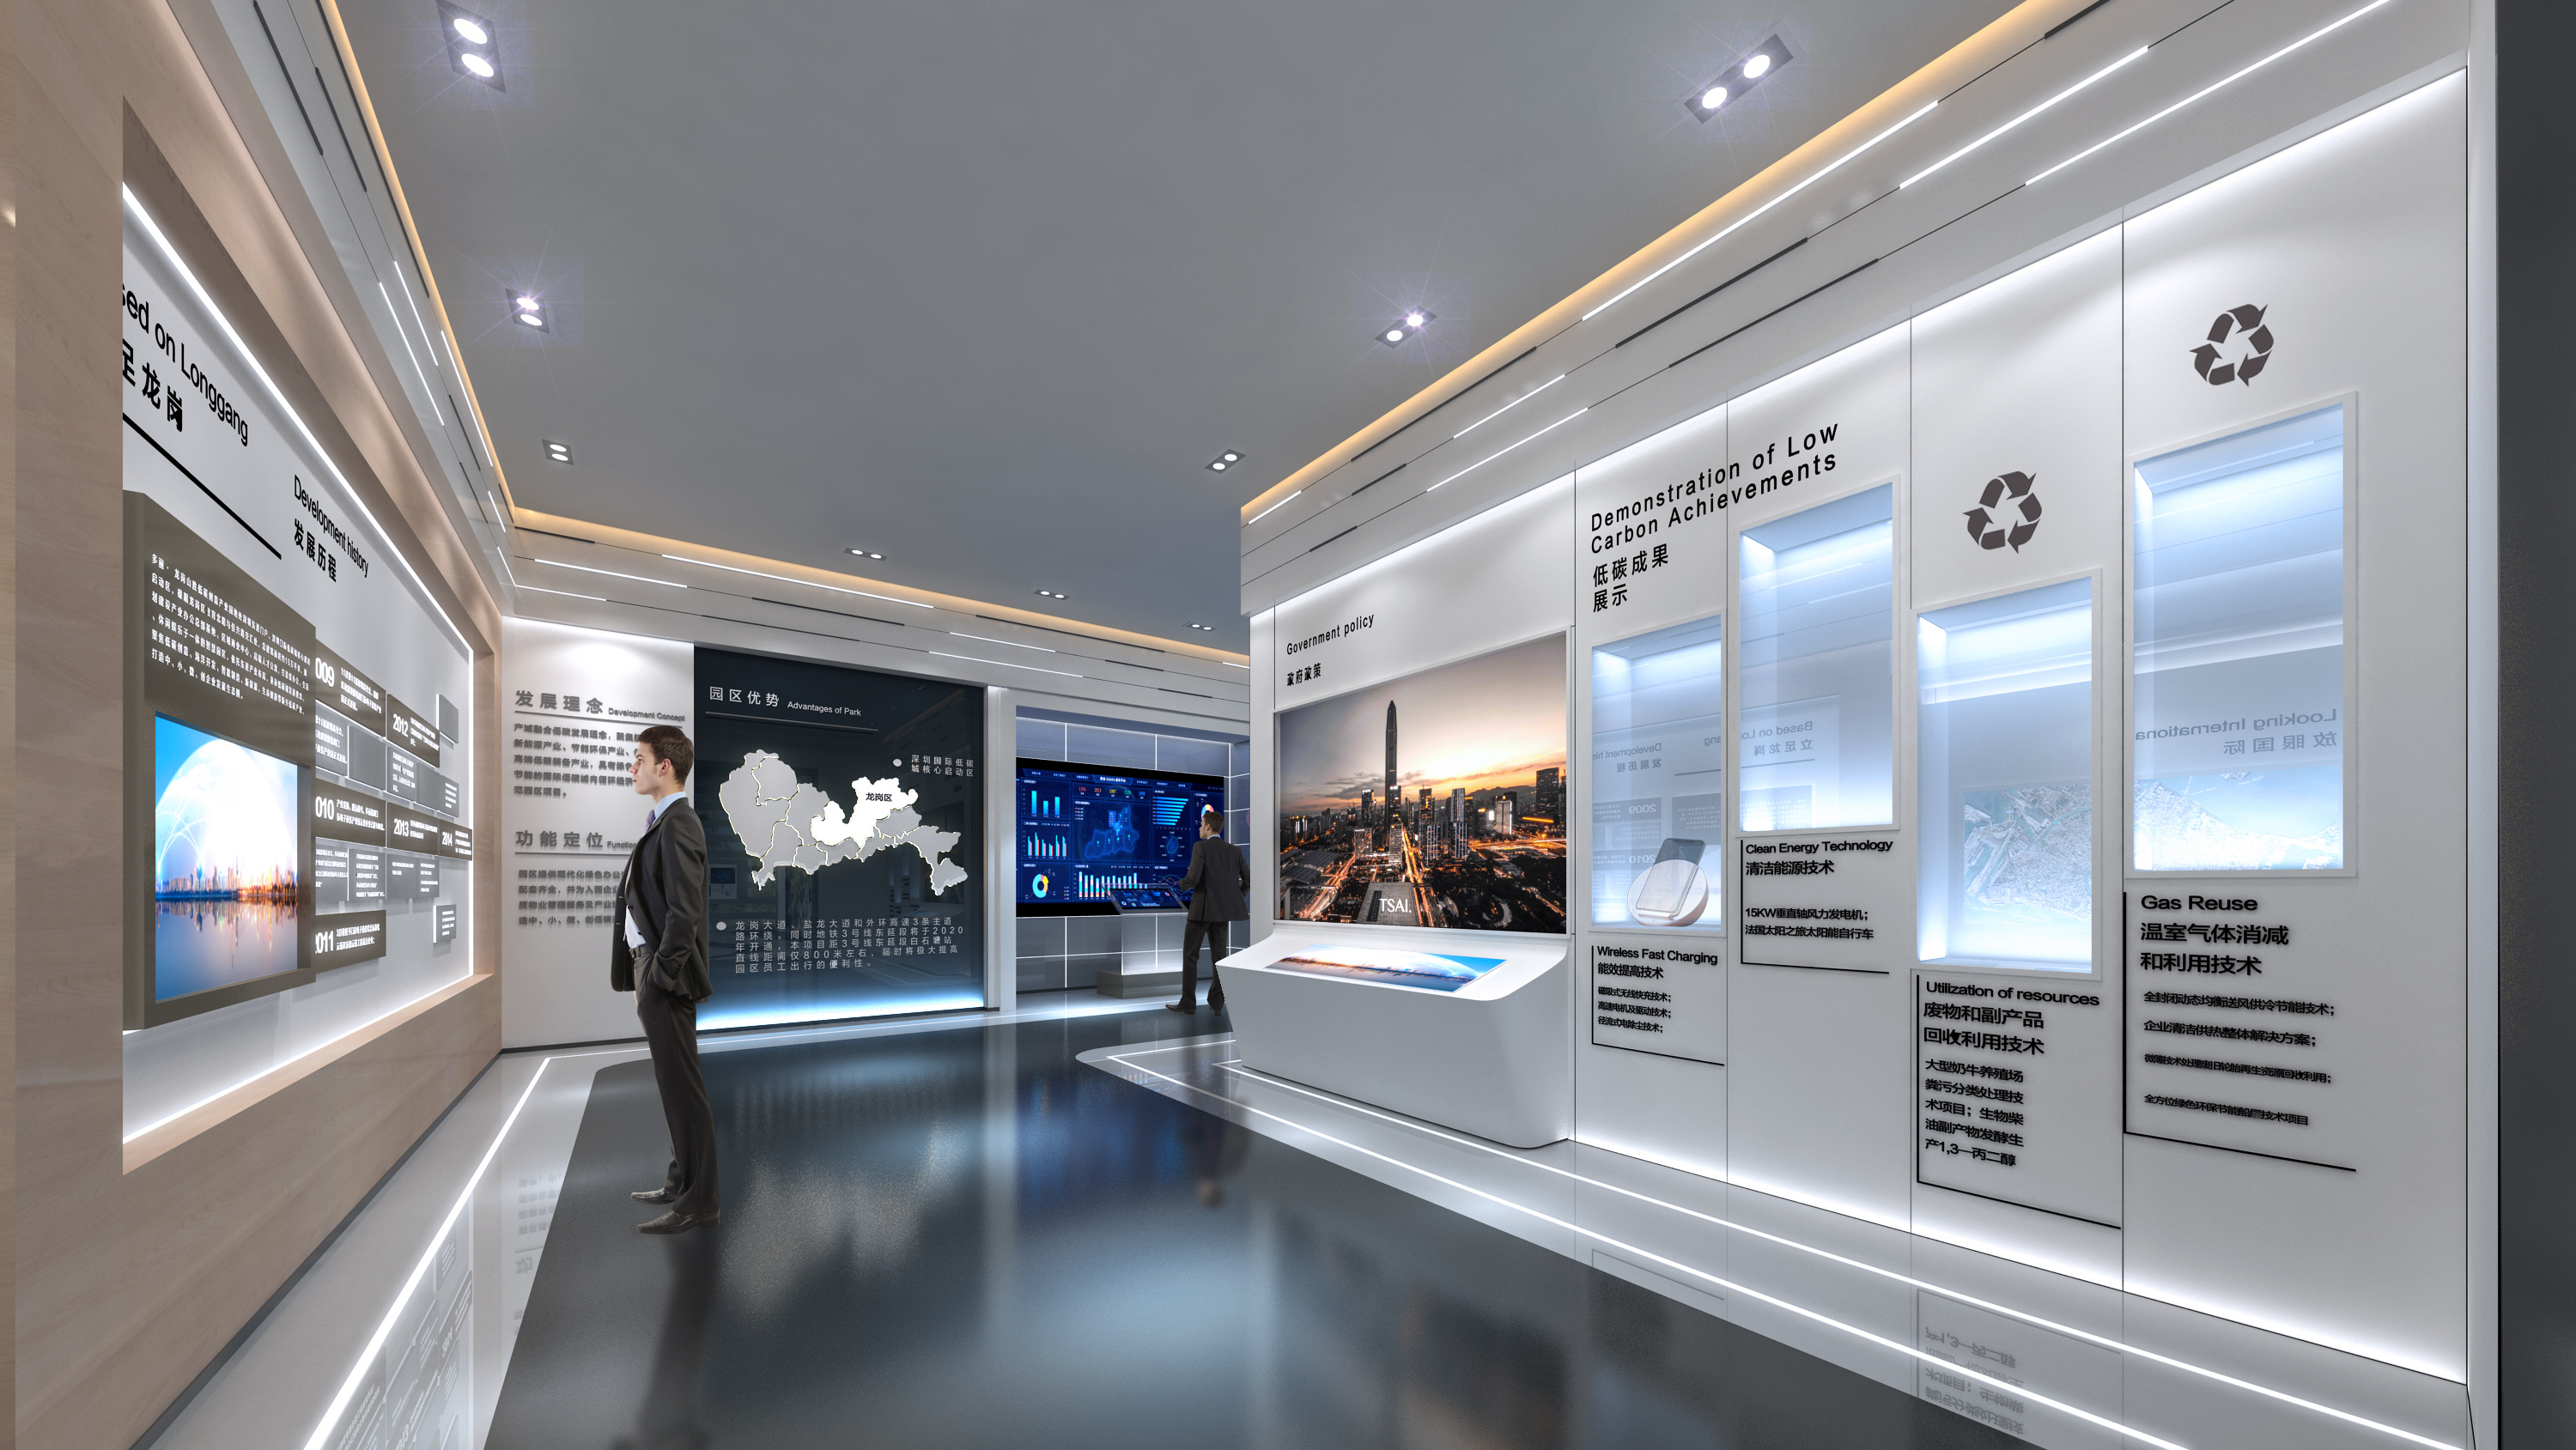 图片展示一位人士站在现代化展览厅内，四周是高科技展示屏和互动设备，环境干净、设计简洁现代。